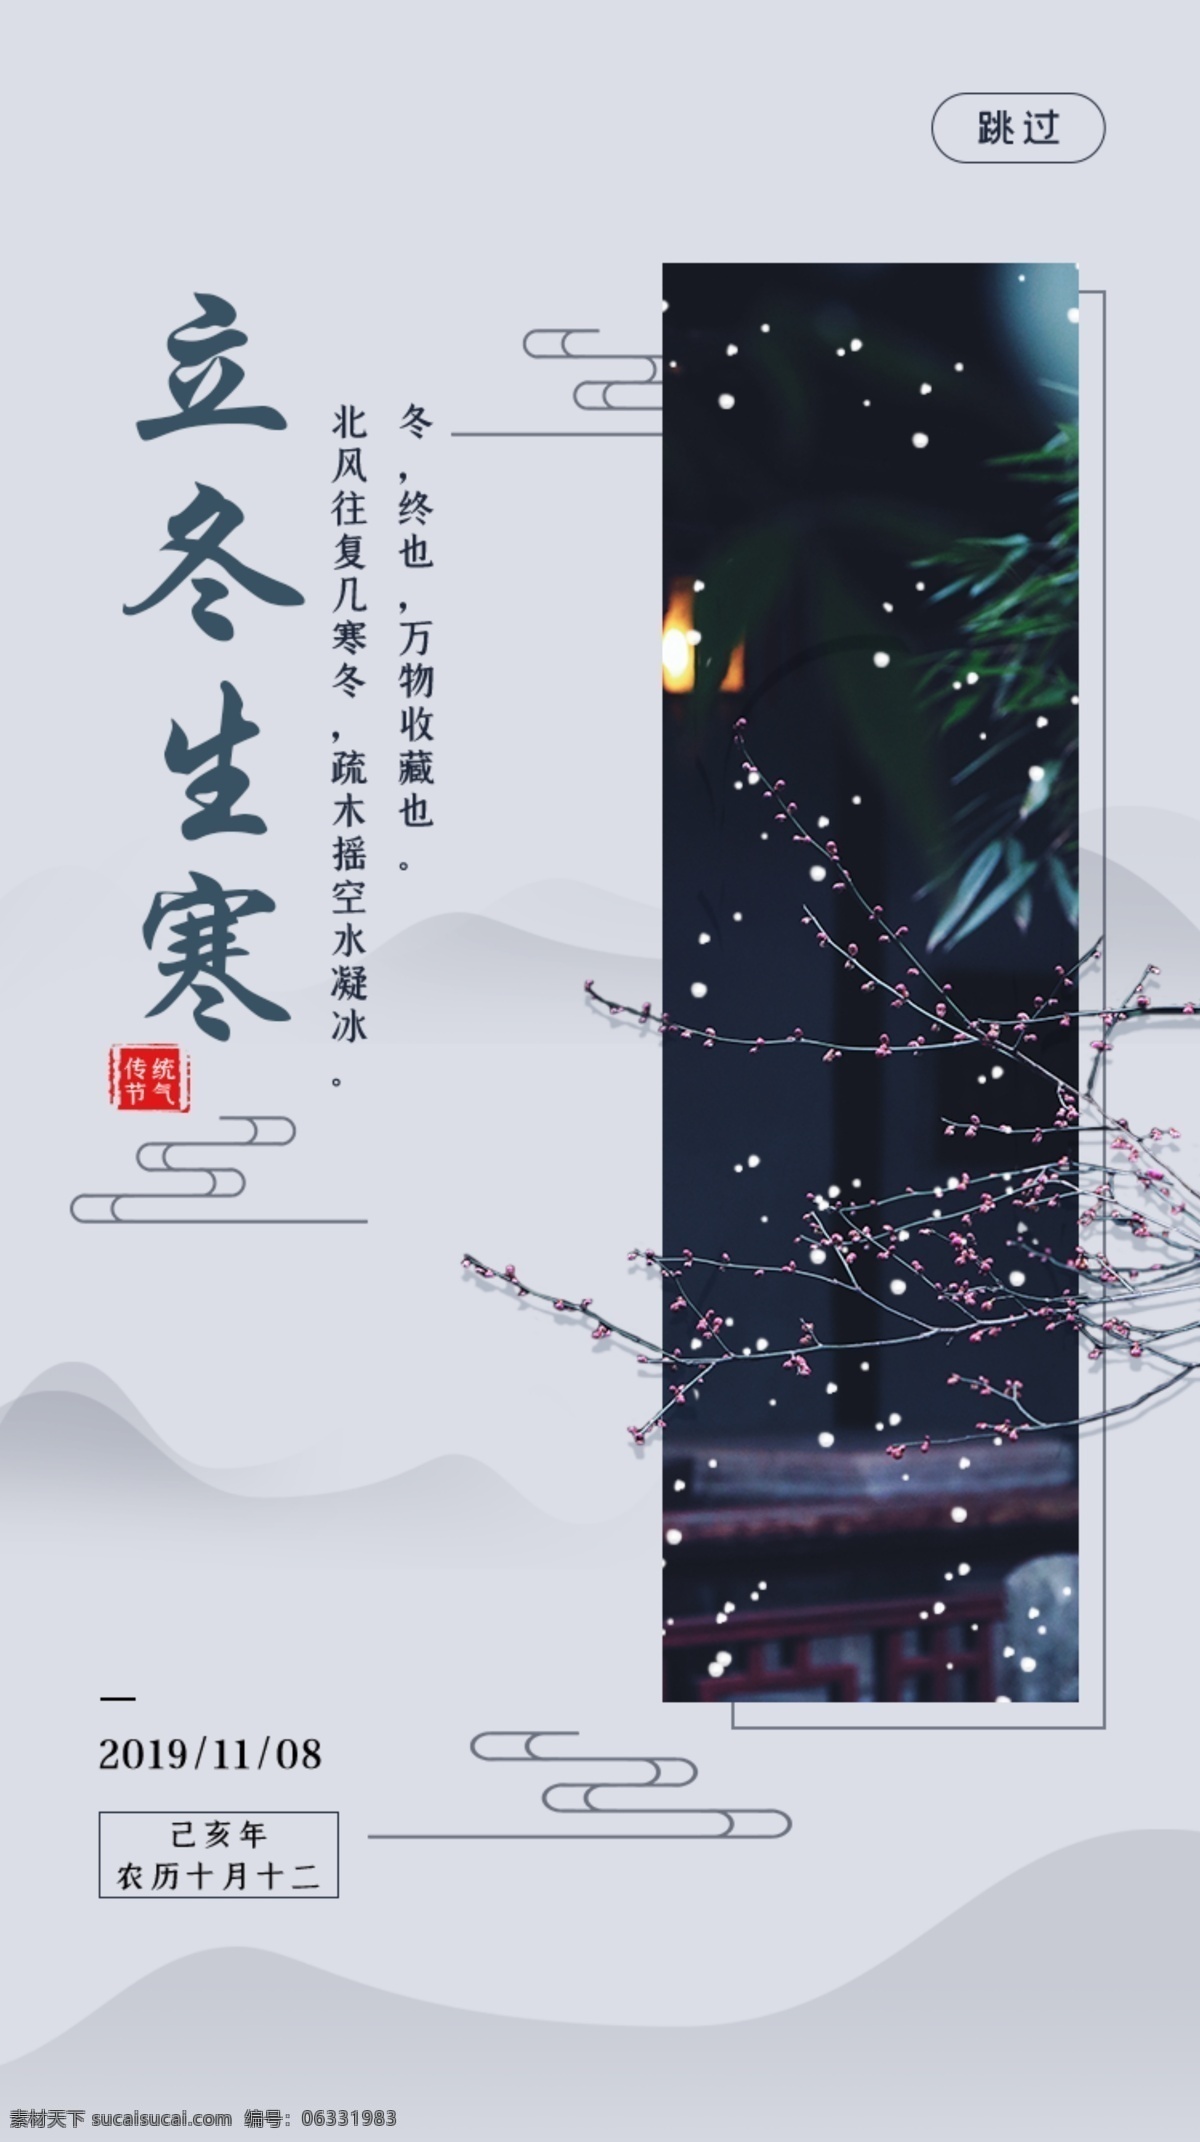 中国 风 立冬 二十四节气 app 启动 中国风 二十四 节气 启动页 闪屏 移动界面设计 手机界面